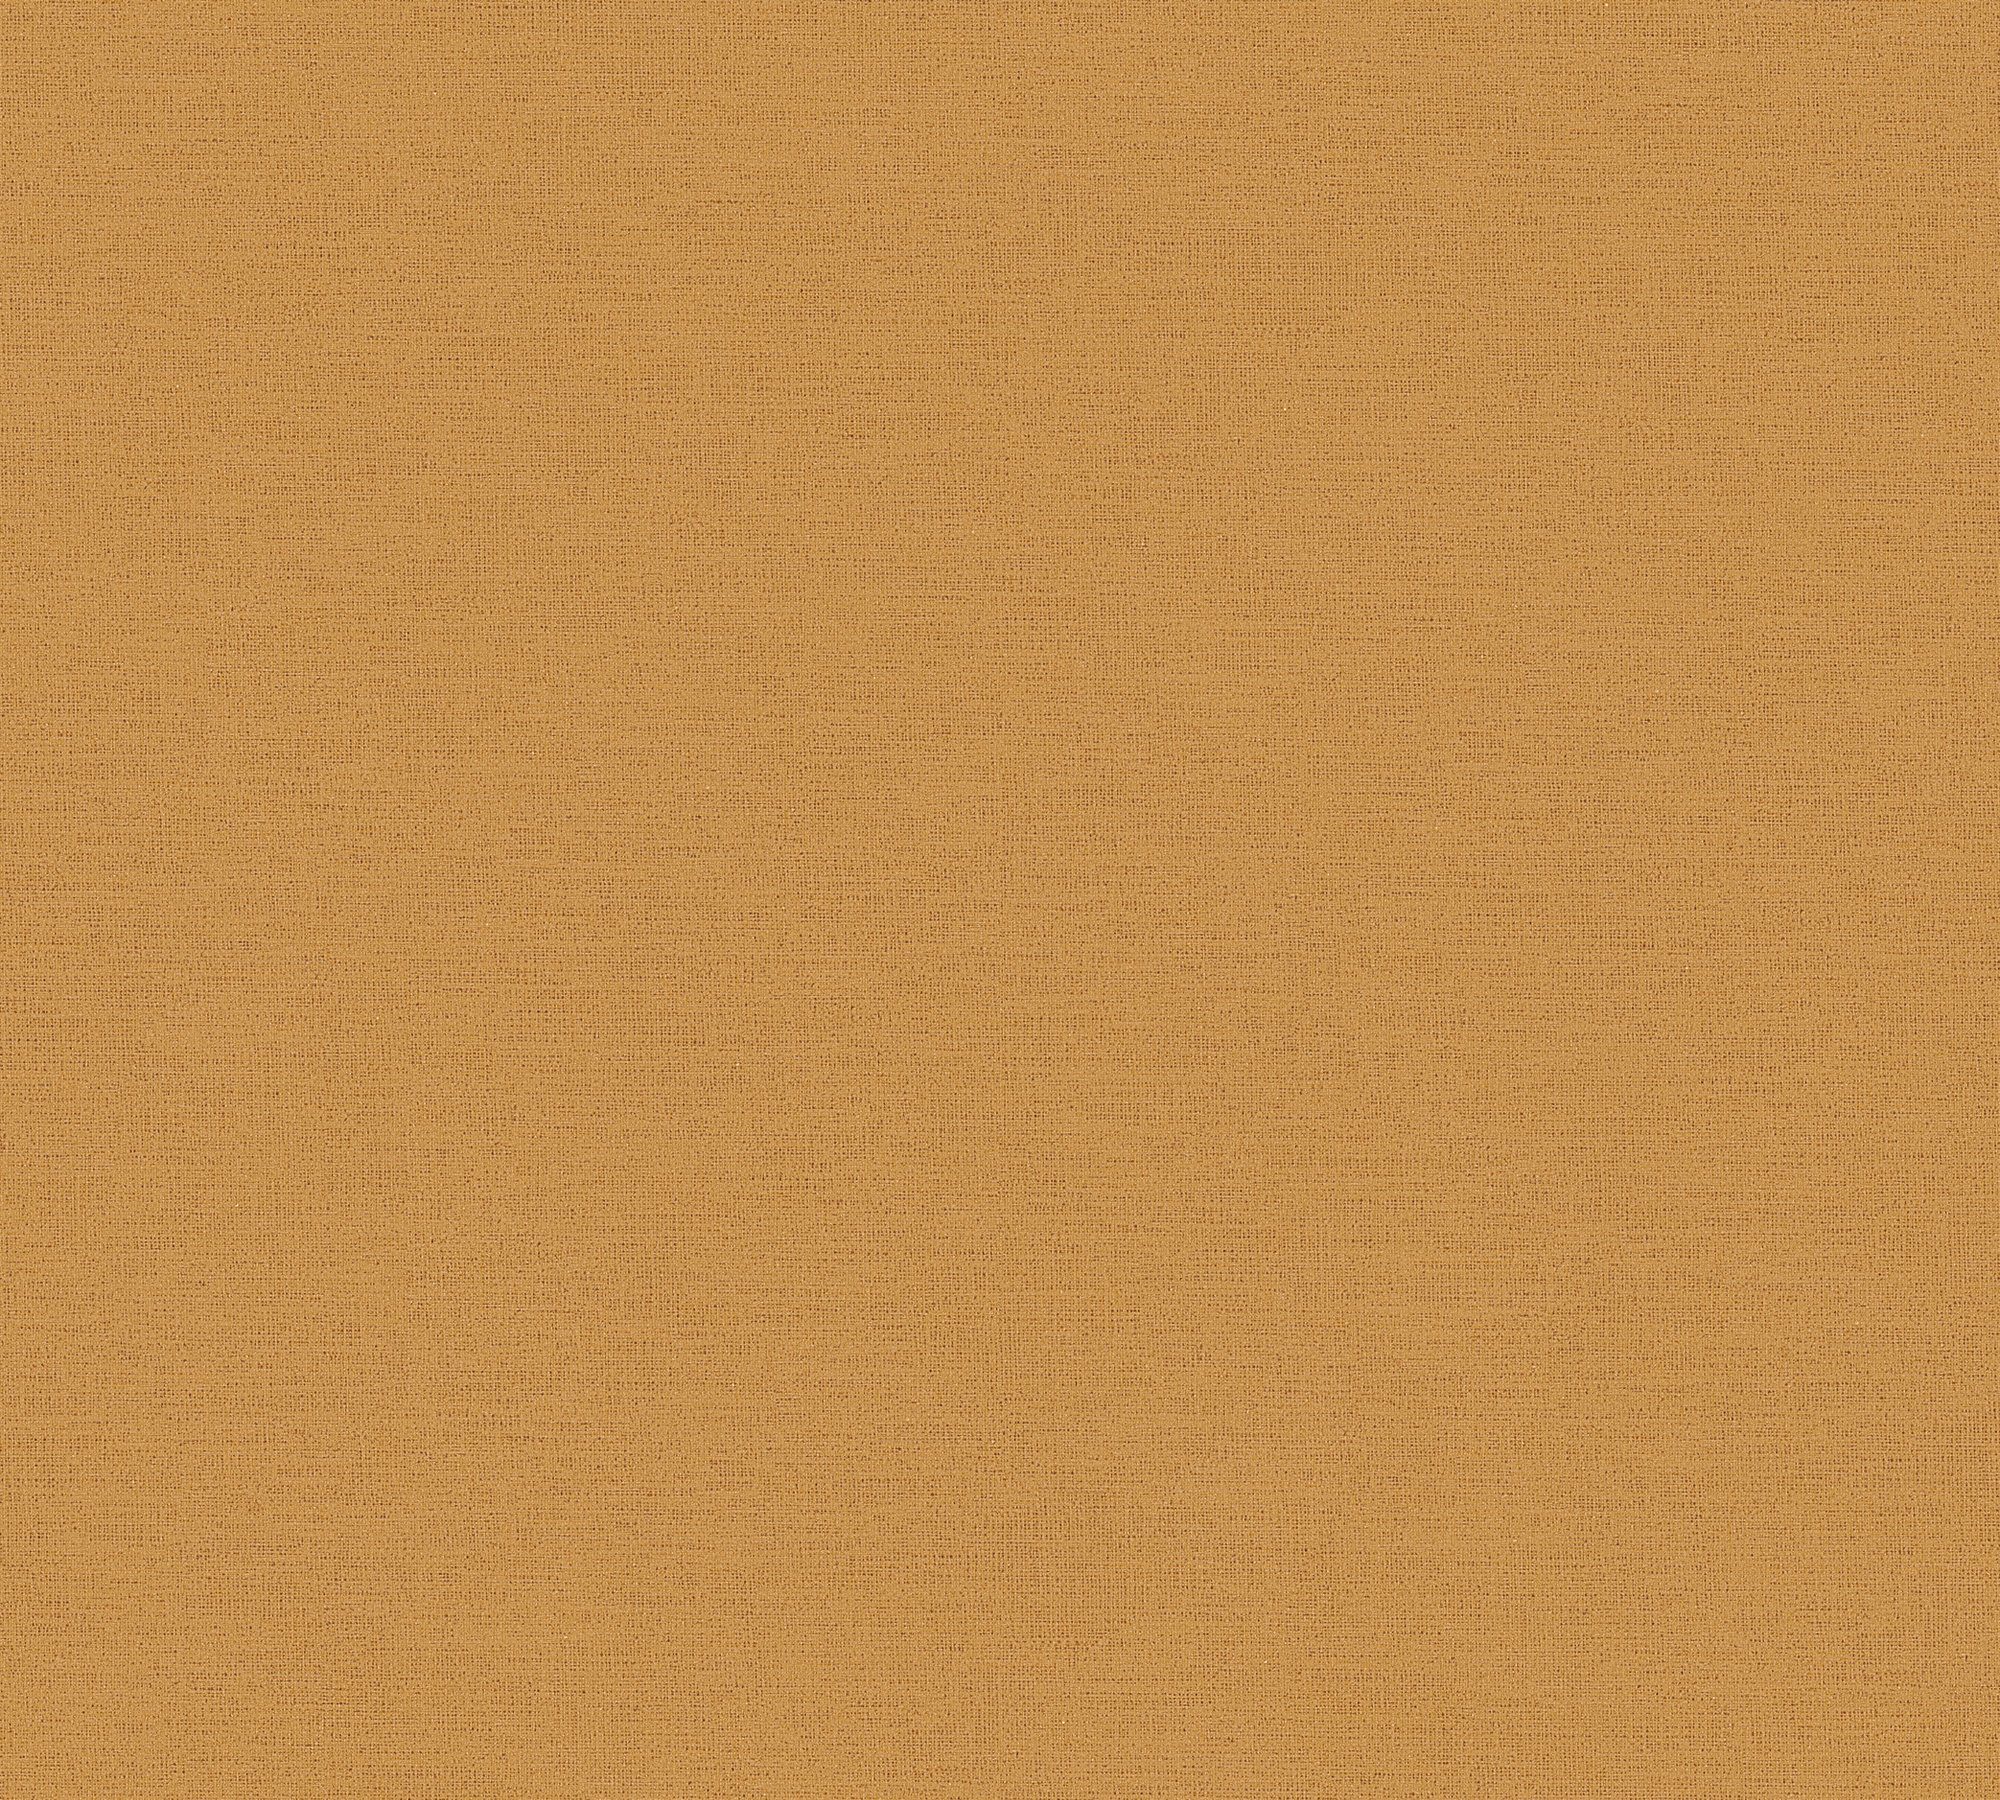 Vliestapete strukturiert (1 St), leicht geprägt, orange,gelb einfarbige Création Unitapete matt, A.S. Antigua Tapete,